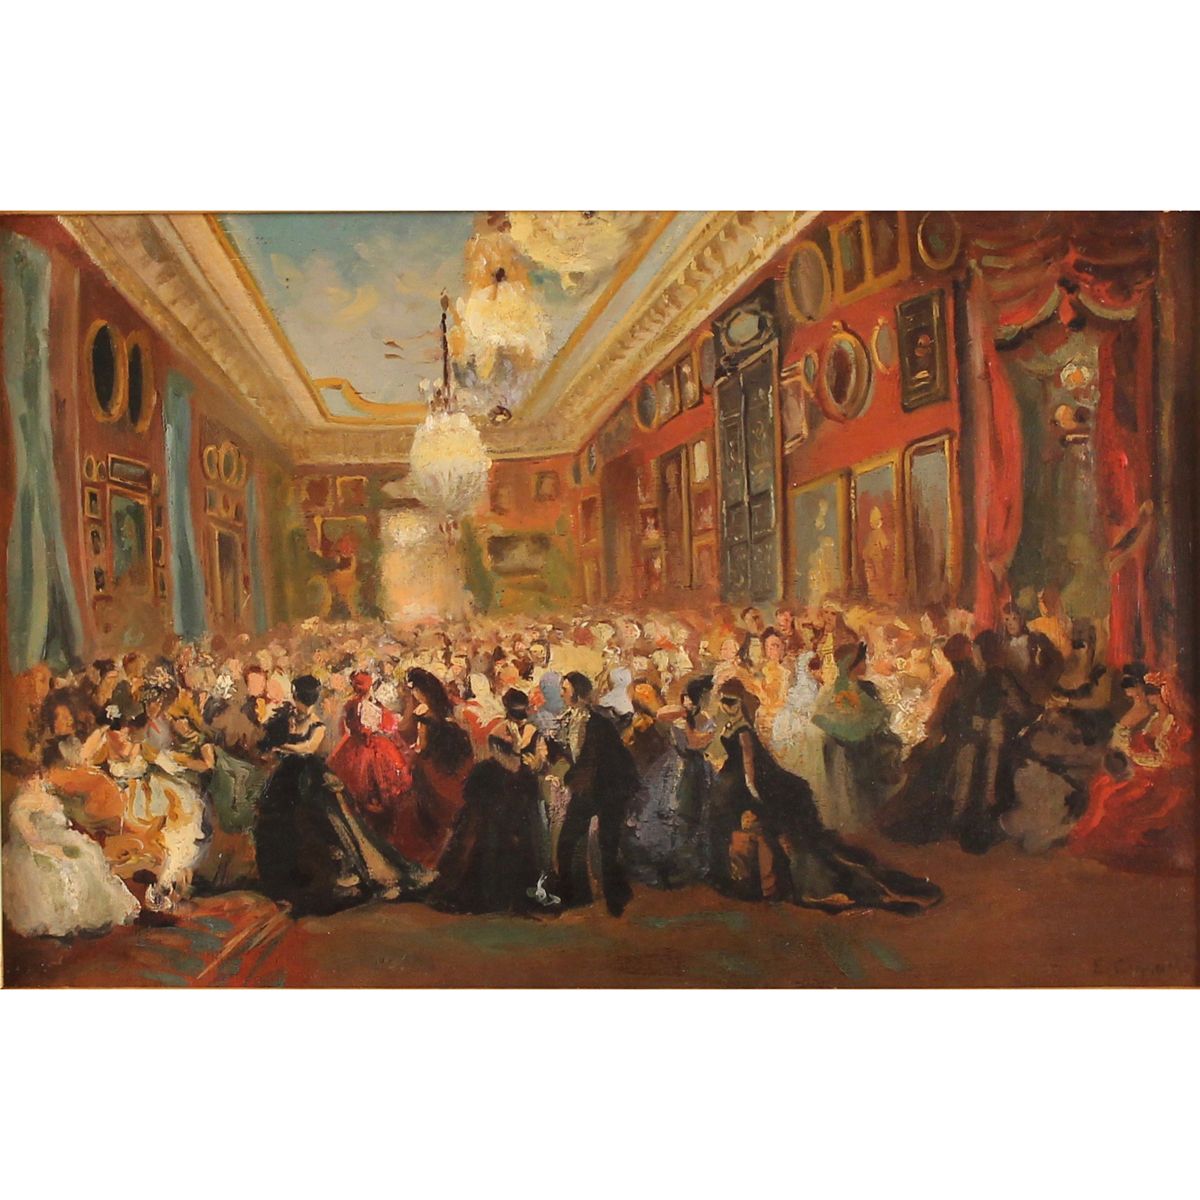 EUGENE GIRAUD (1806/1881) "Ballo al palazzo borbonico" - "Ball at the Bourbon pa&hellip;